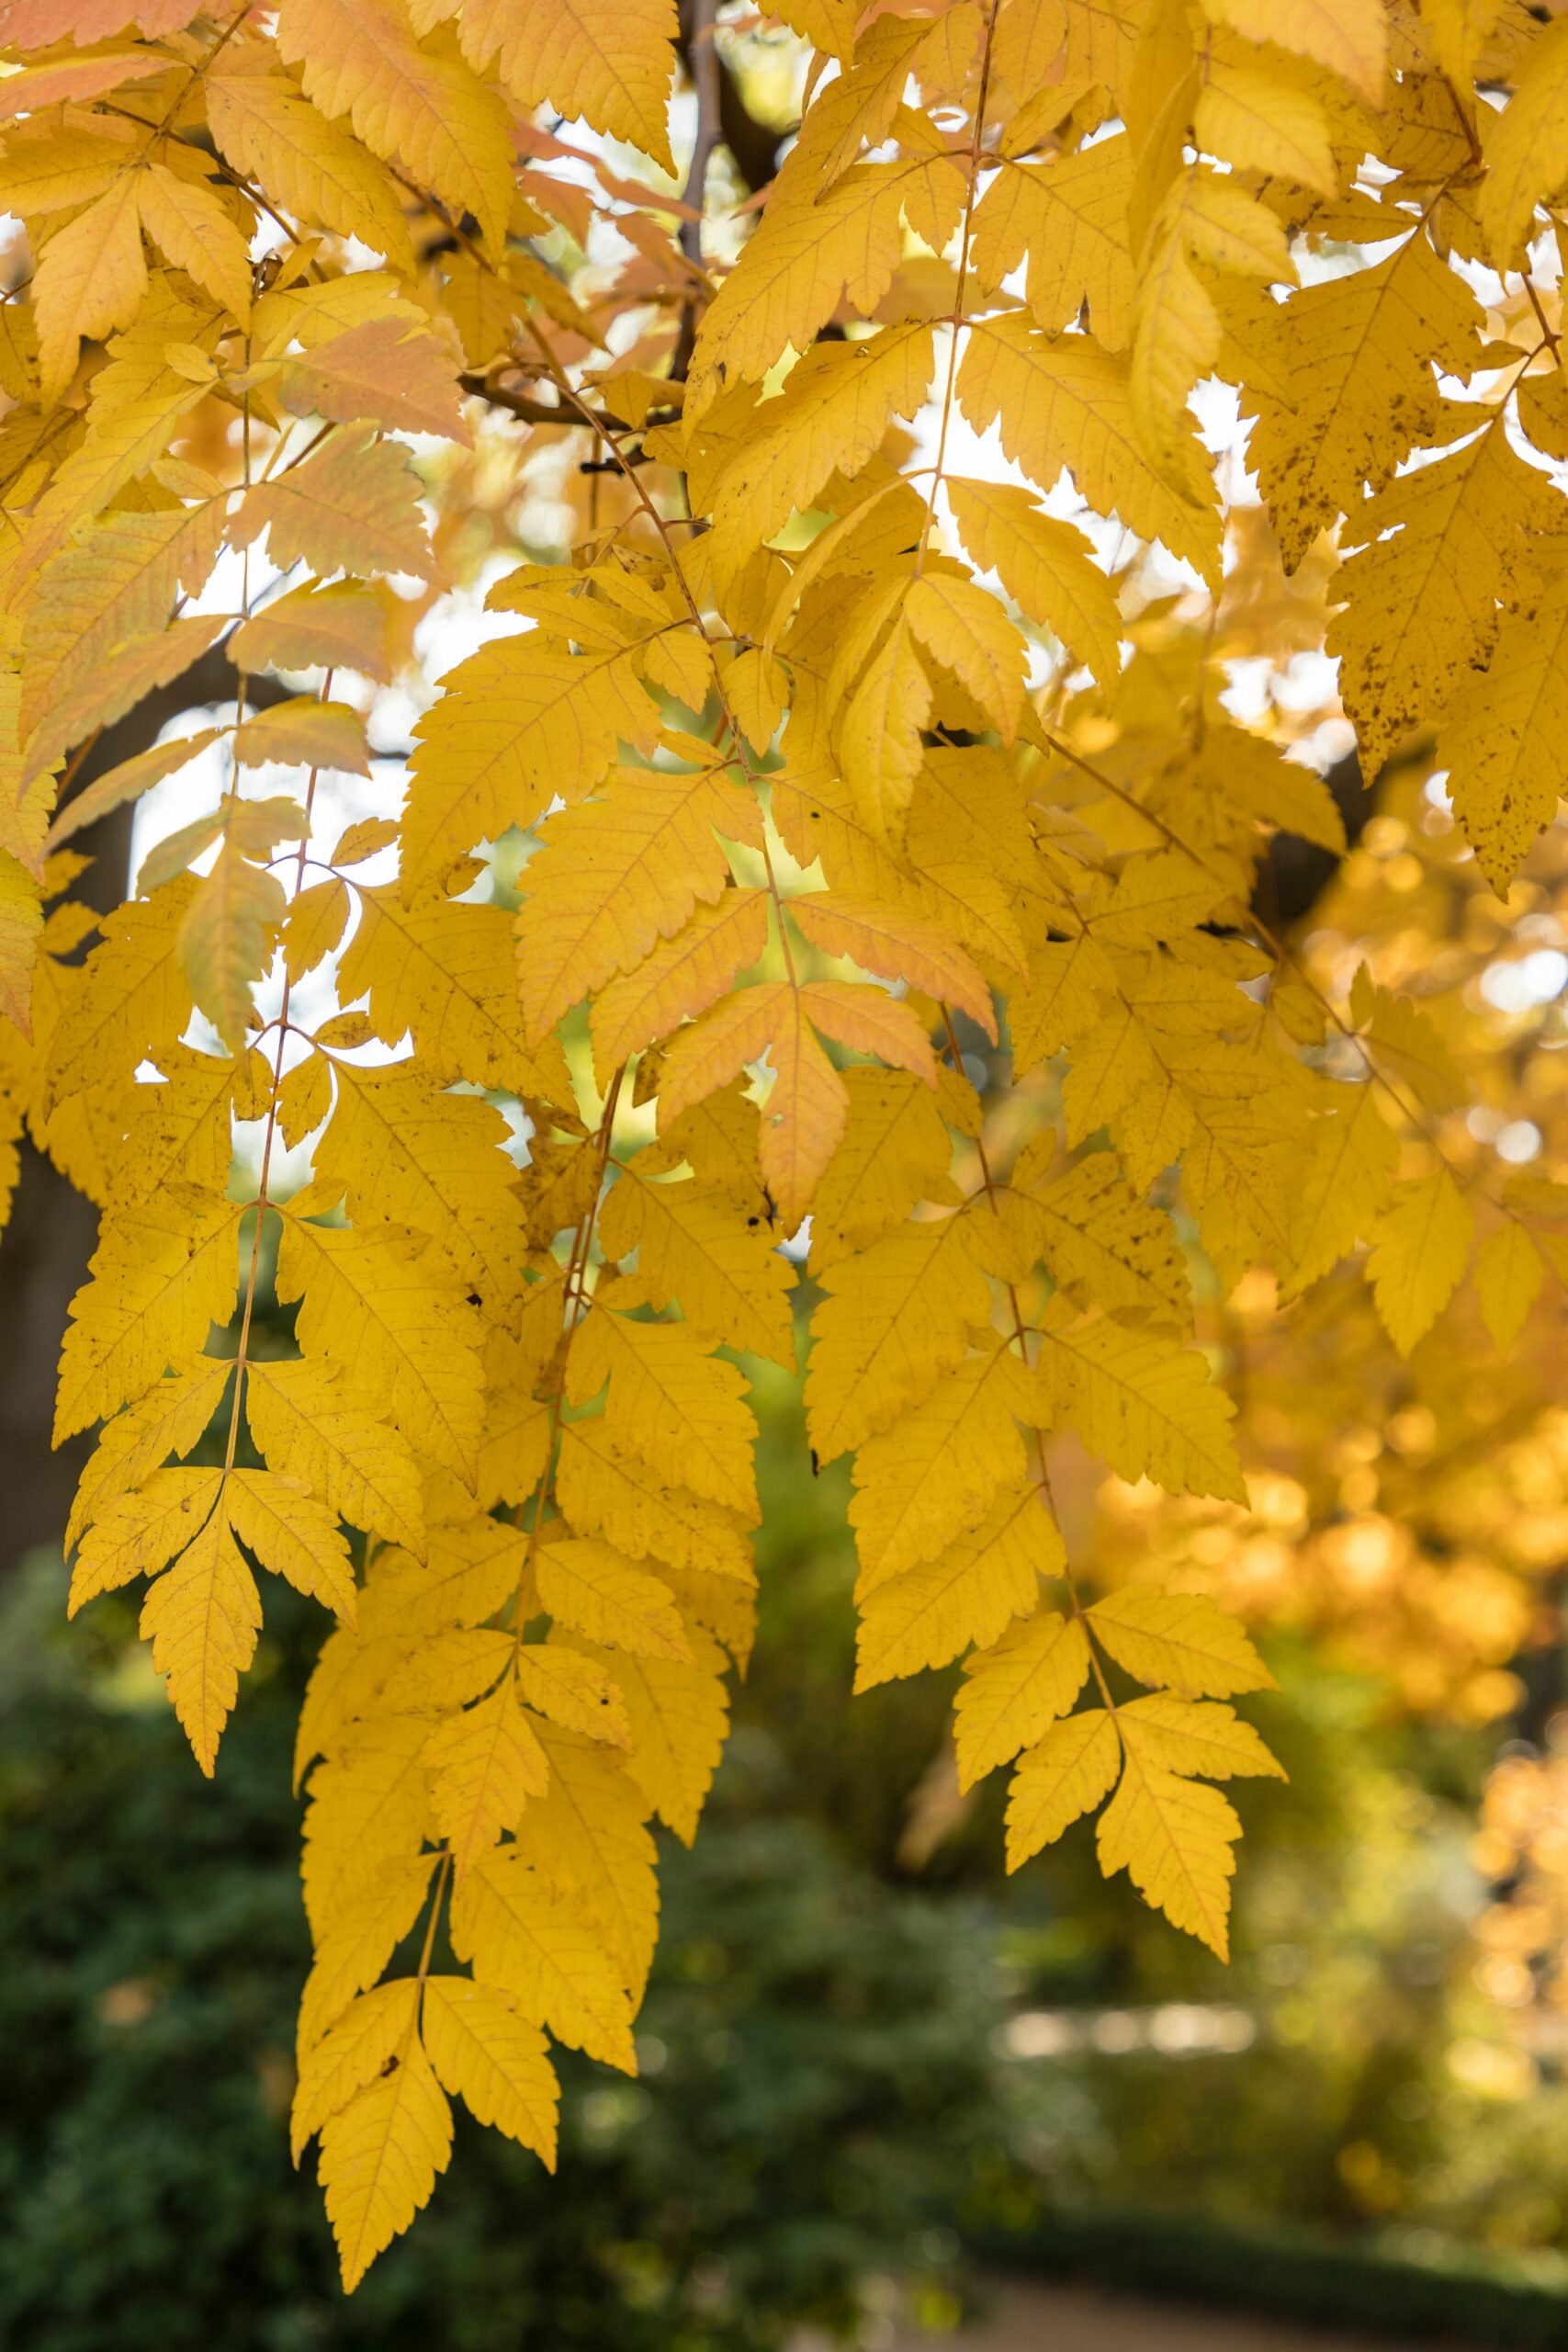 Koelreuteria paniculata Golden Rain autumn leaves